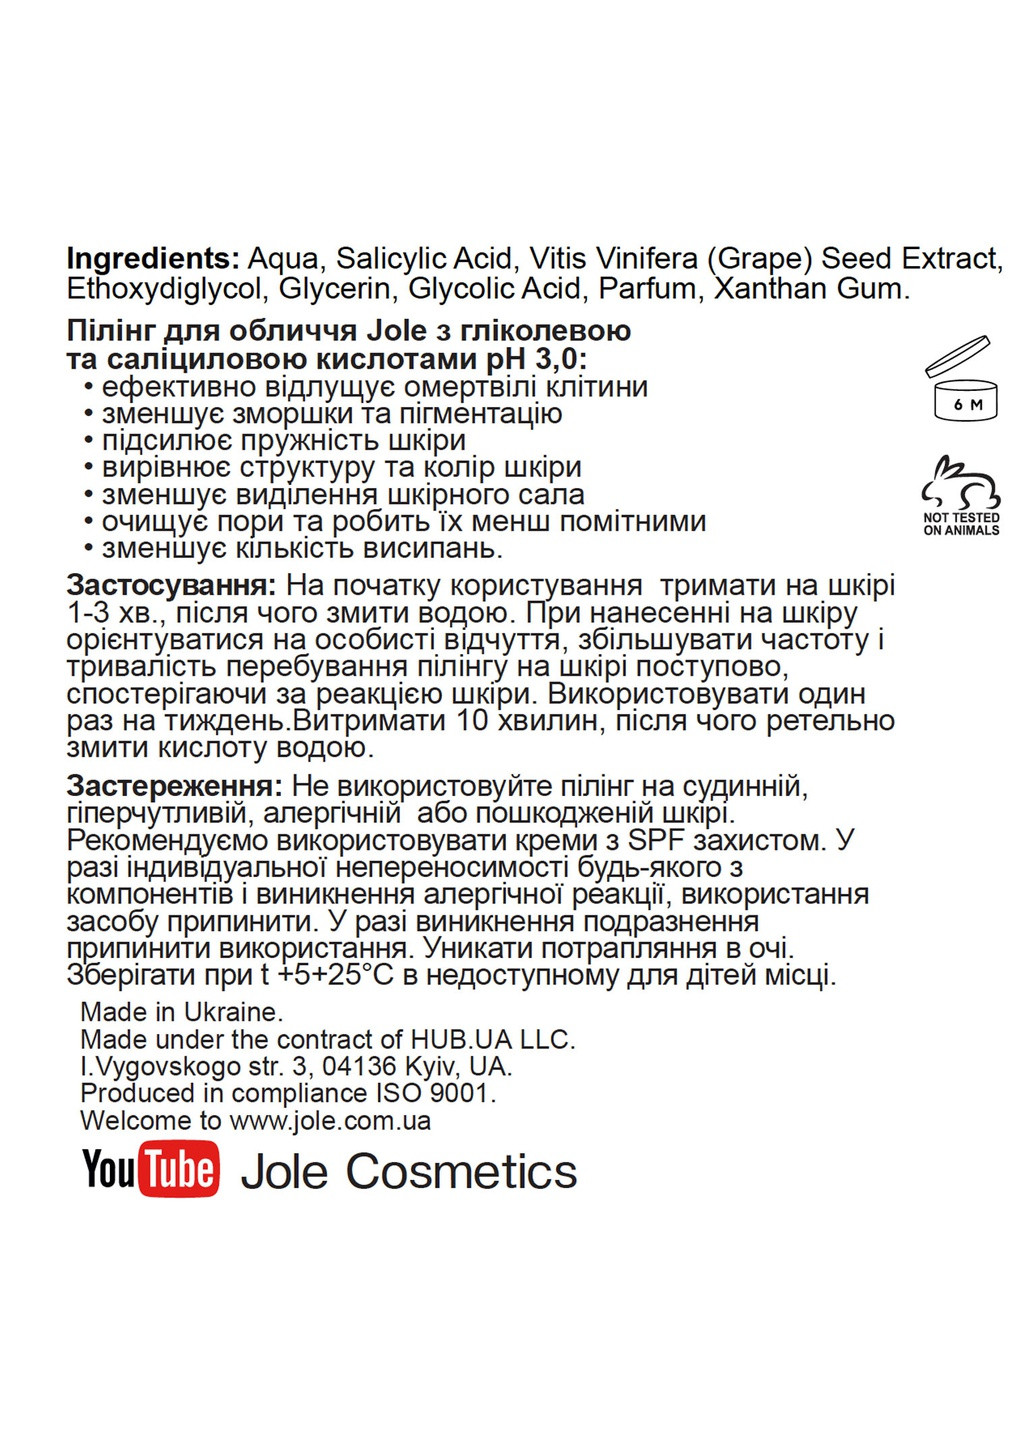 Пилинг для лица с Гликолевой и Салициловой кислотами Glycolic+Salicilic Peeling pH 3.0 30ml Jole (251160492)